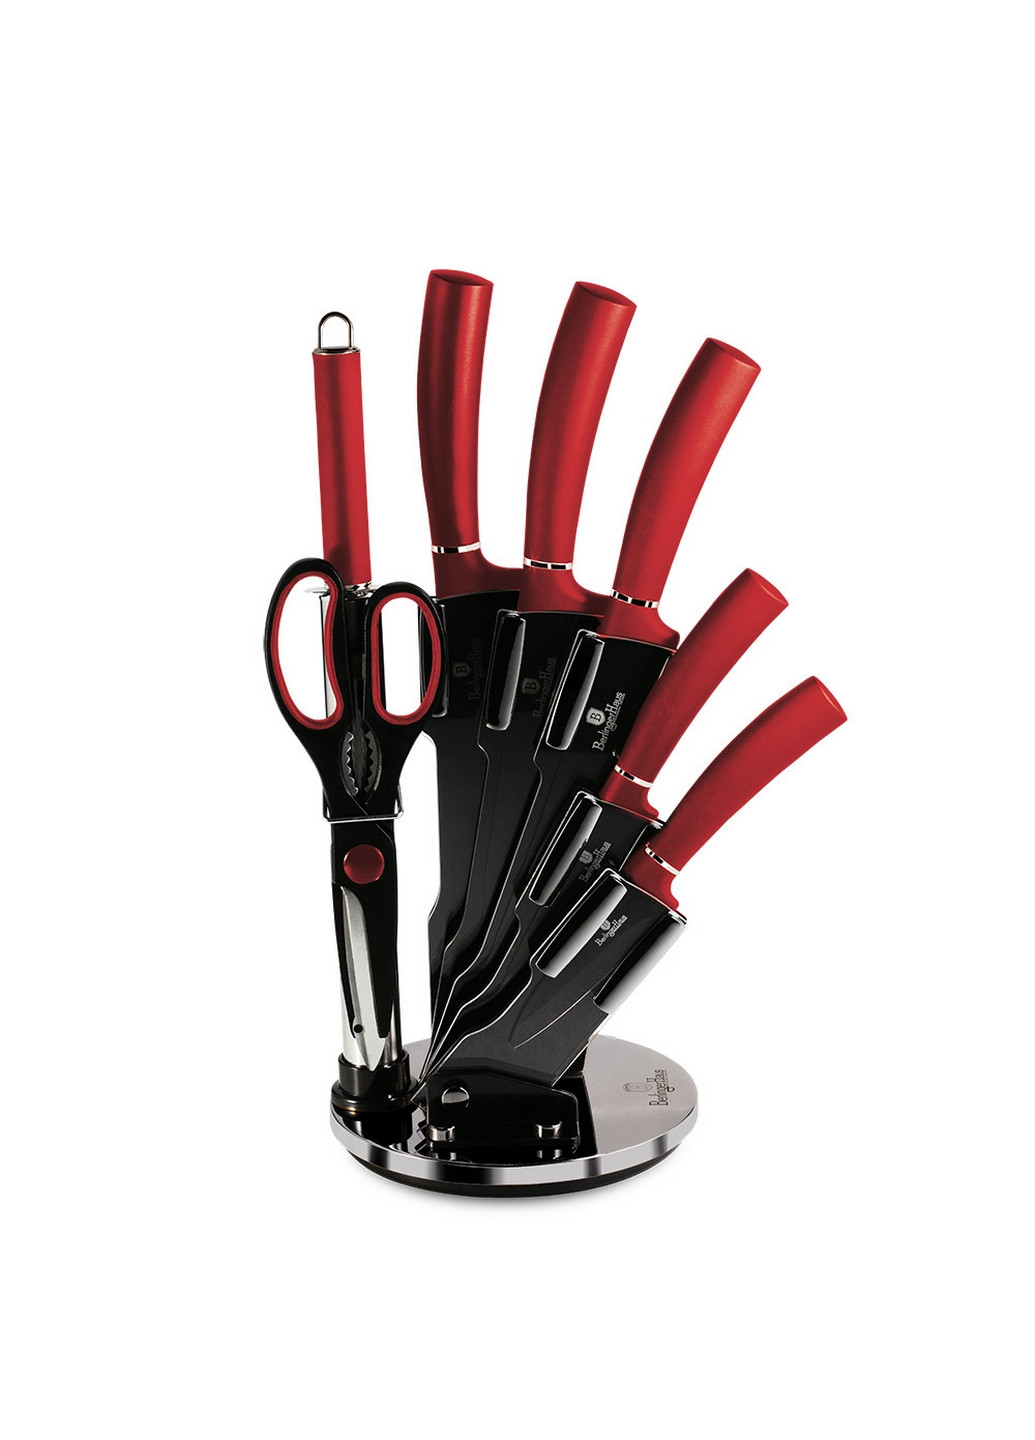 Набор ножей на подставке 8 предметов Metallic Line Burgundy Edition Berlinger Haus красные,